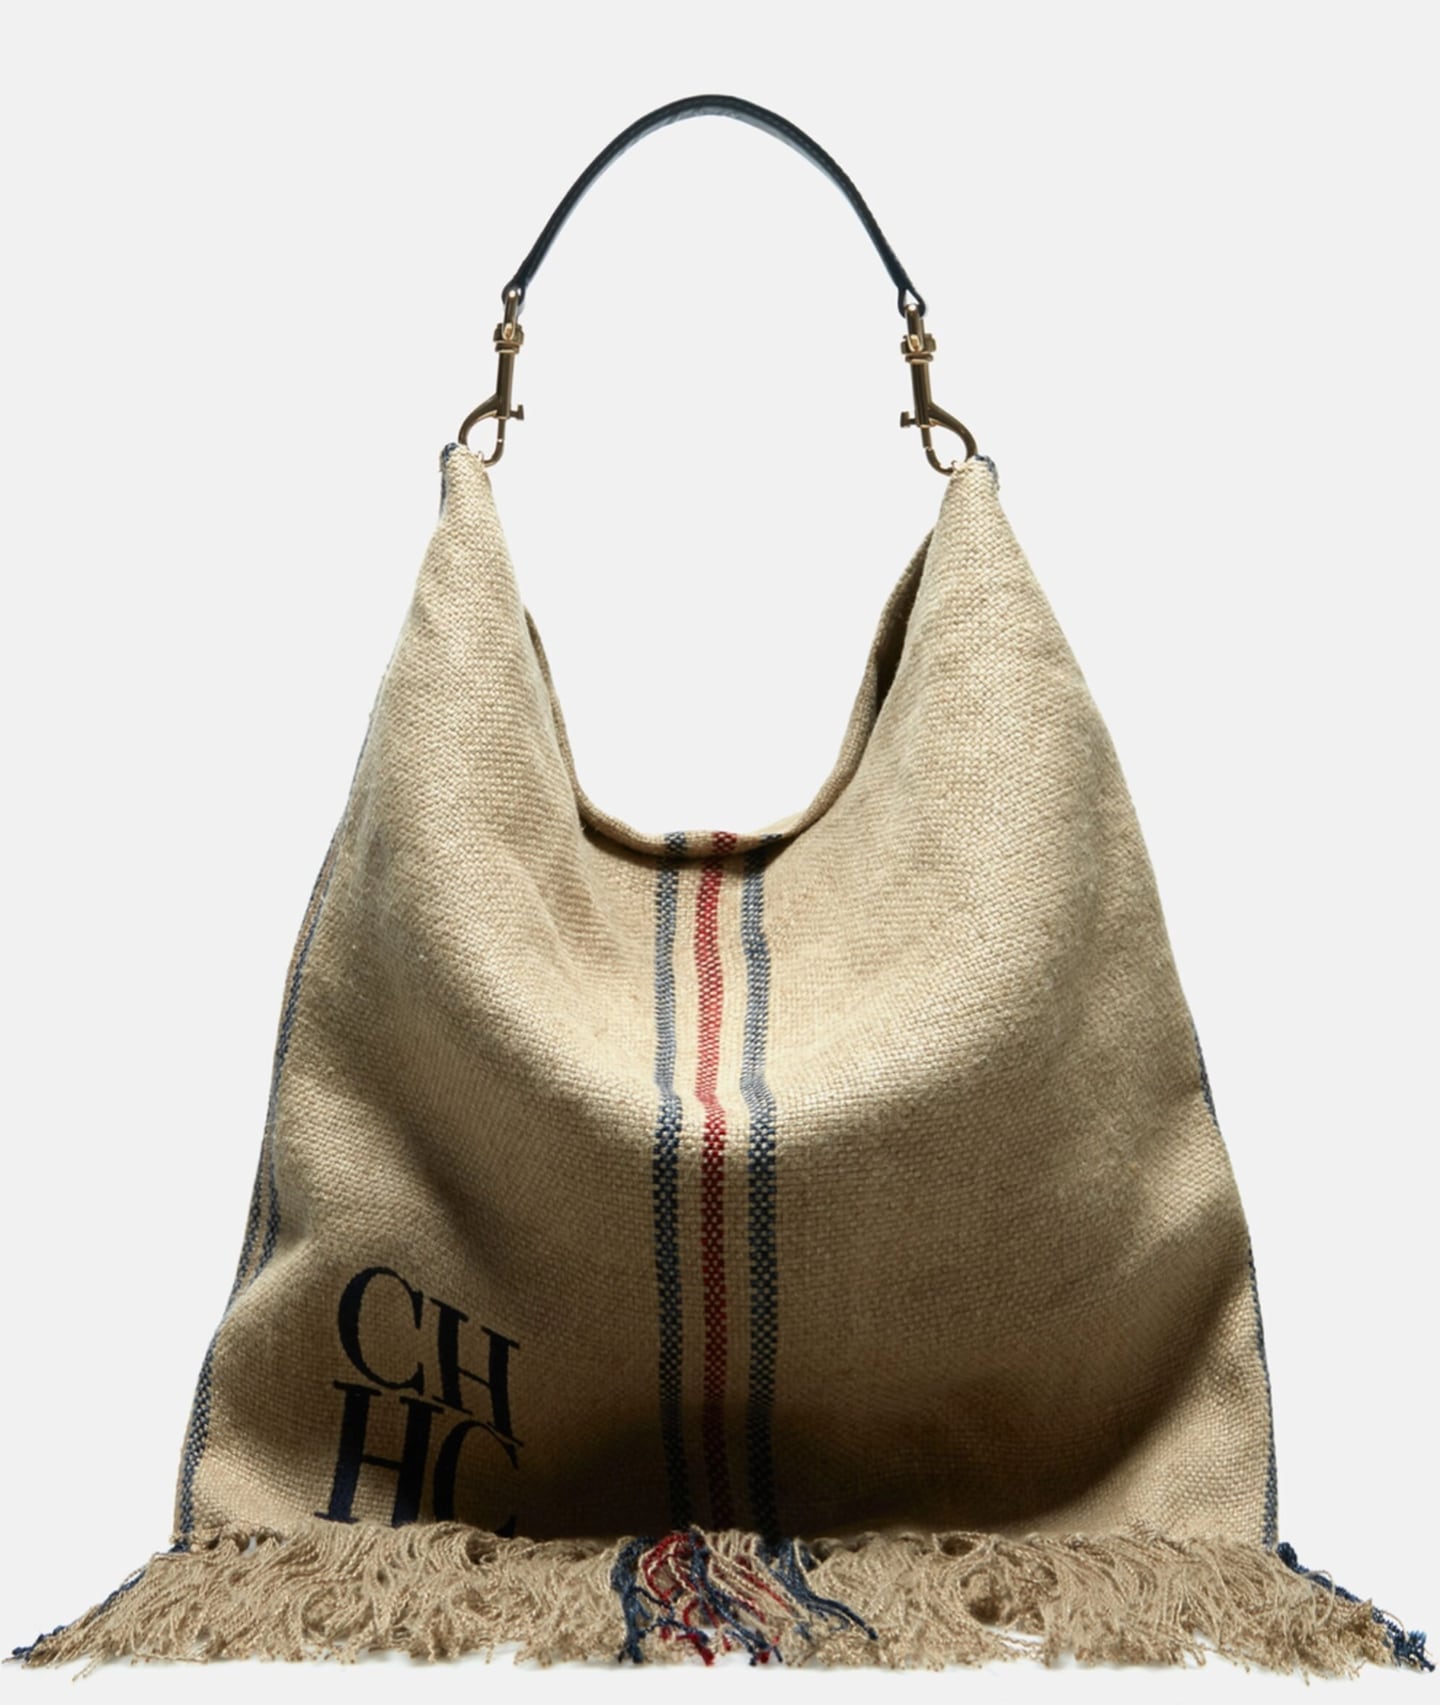 El bolso de Carolina Herrera de la colección "Poncho" fue calificado de apropiación cultural en redes sociales.